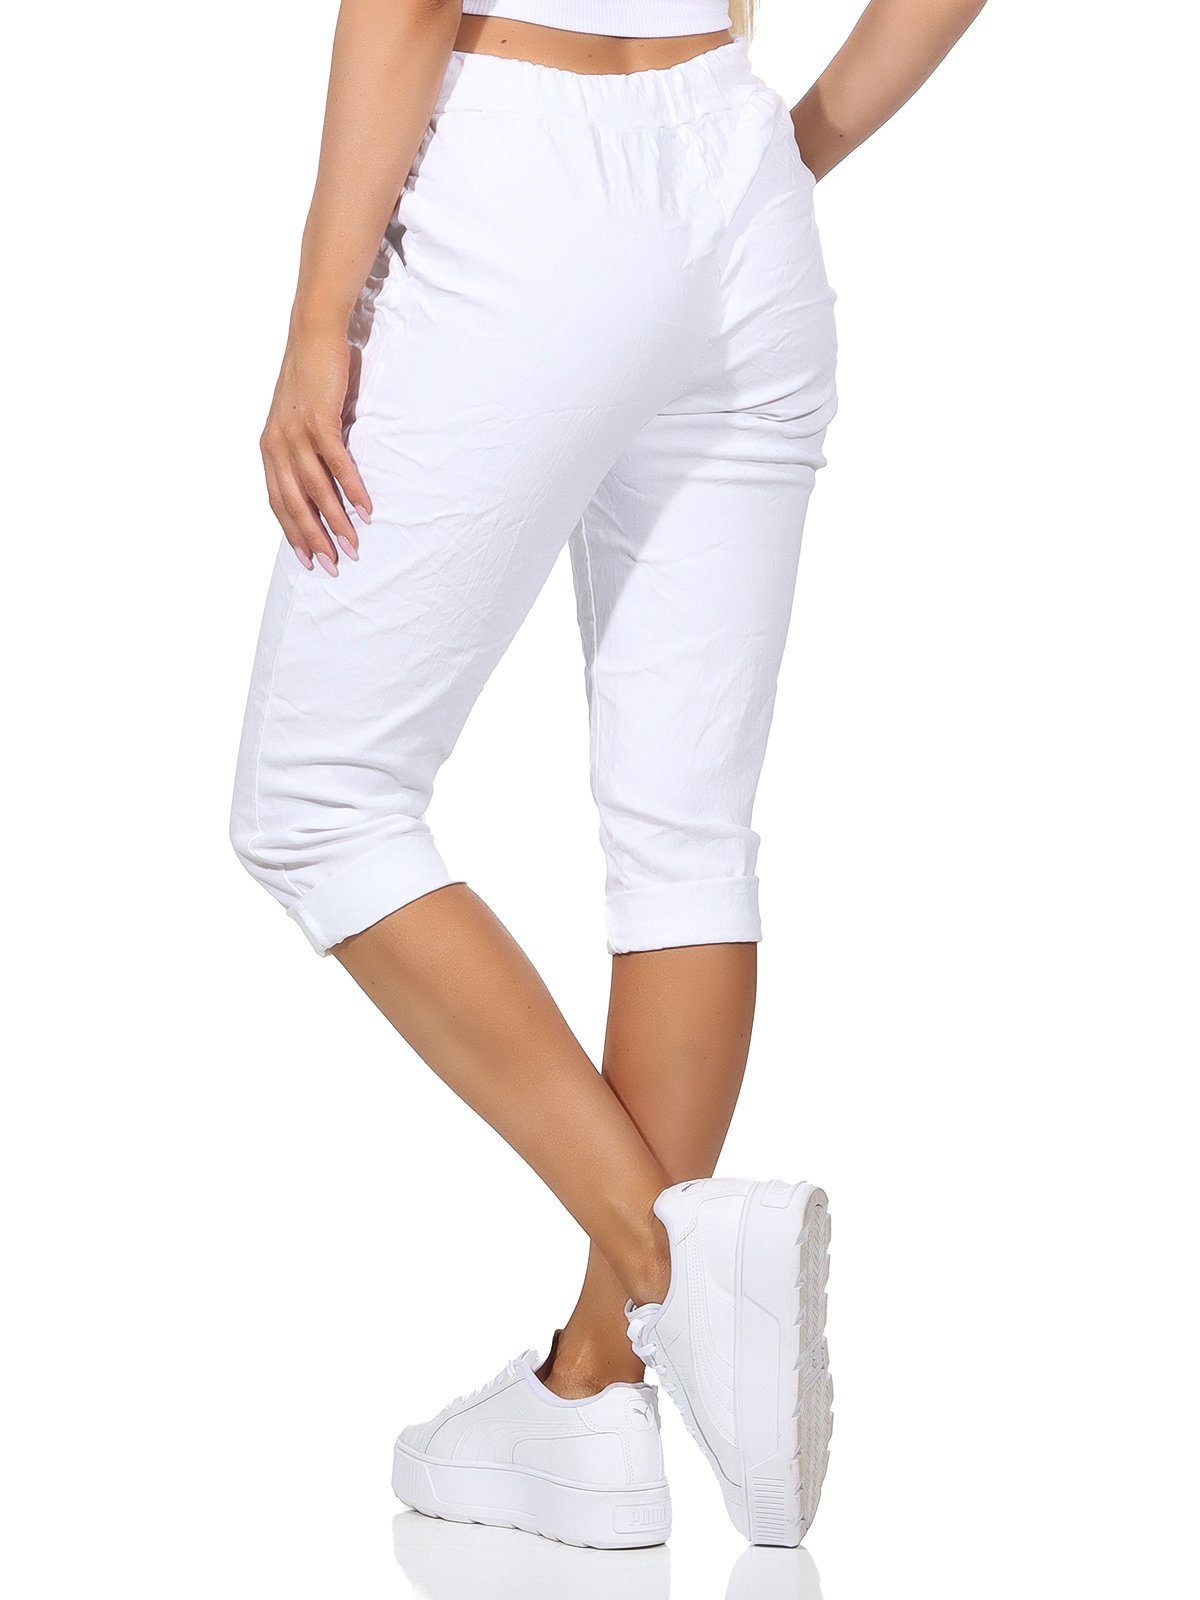 Aurela Damenmode 7/8-Hose Weiß Kordelzug, und Hose in Bermuda Jeans Sommerhose sommerlichen Kurze 36-44 Farben, Damen Taschen Capri